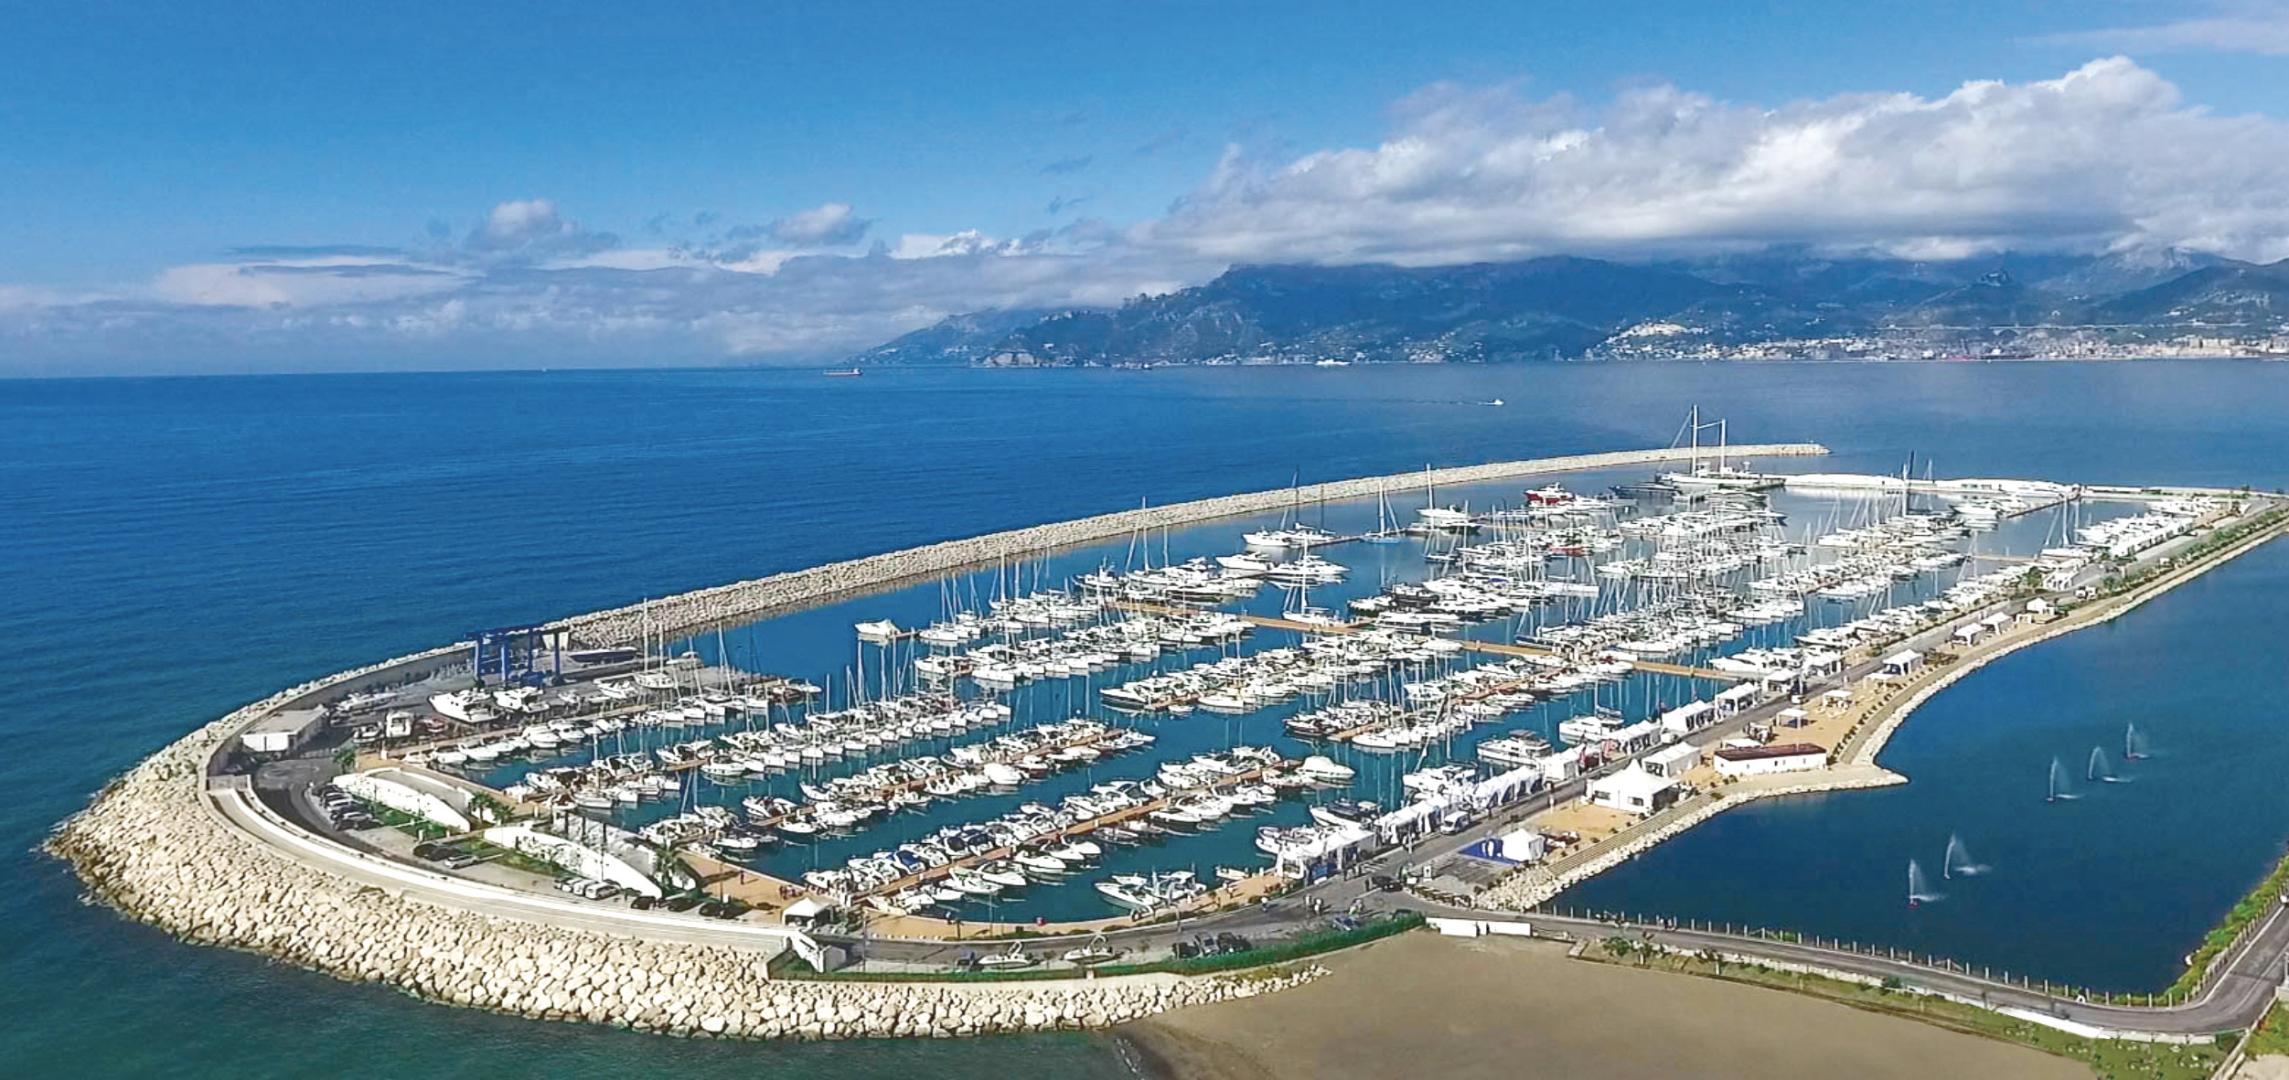 Marina d'Arechi, la base ideale per le crociere in Costiera Amalfitana